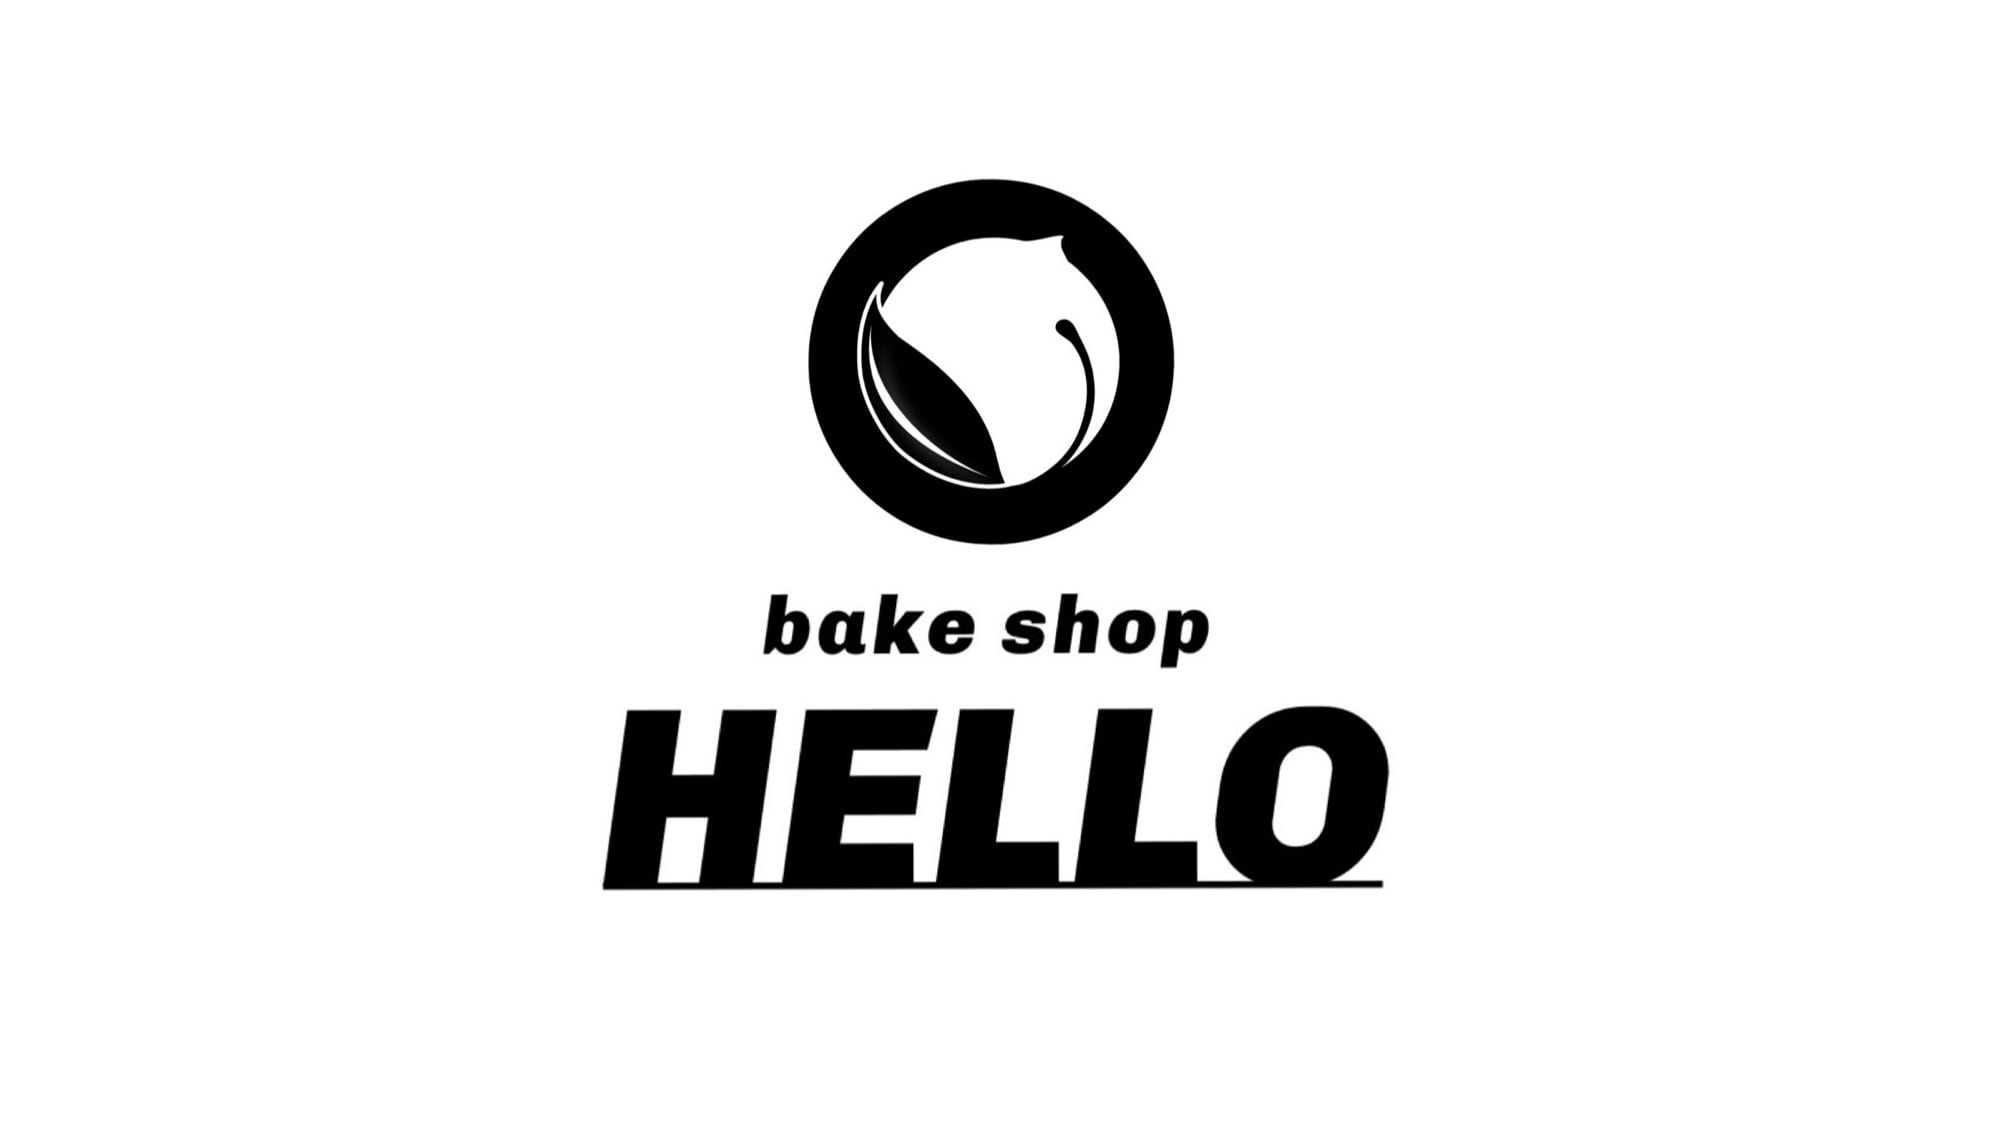 bake shop HELLO